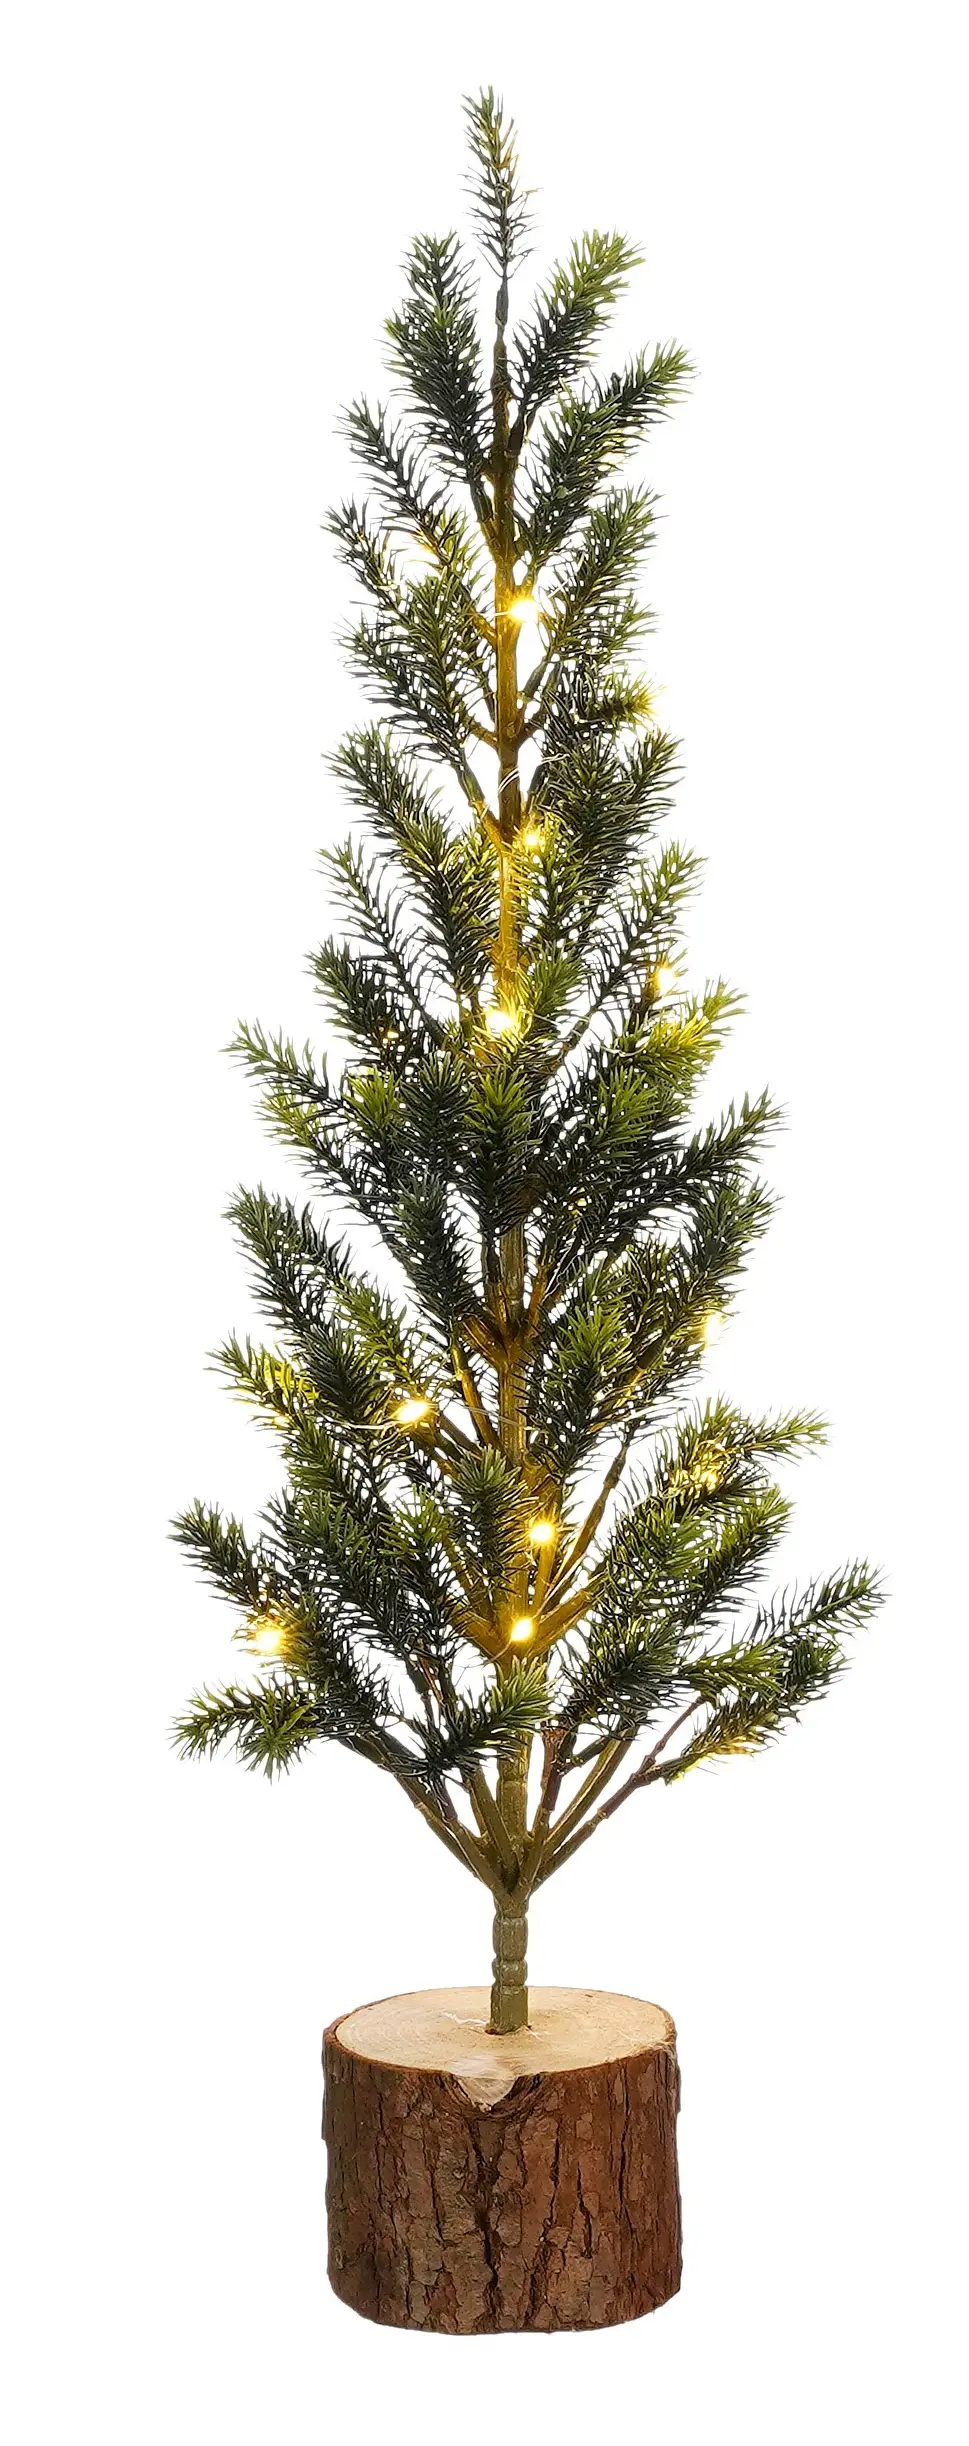 K眉nstlicher Weihnachtsbaum | Weihnachtsbäume